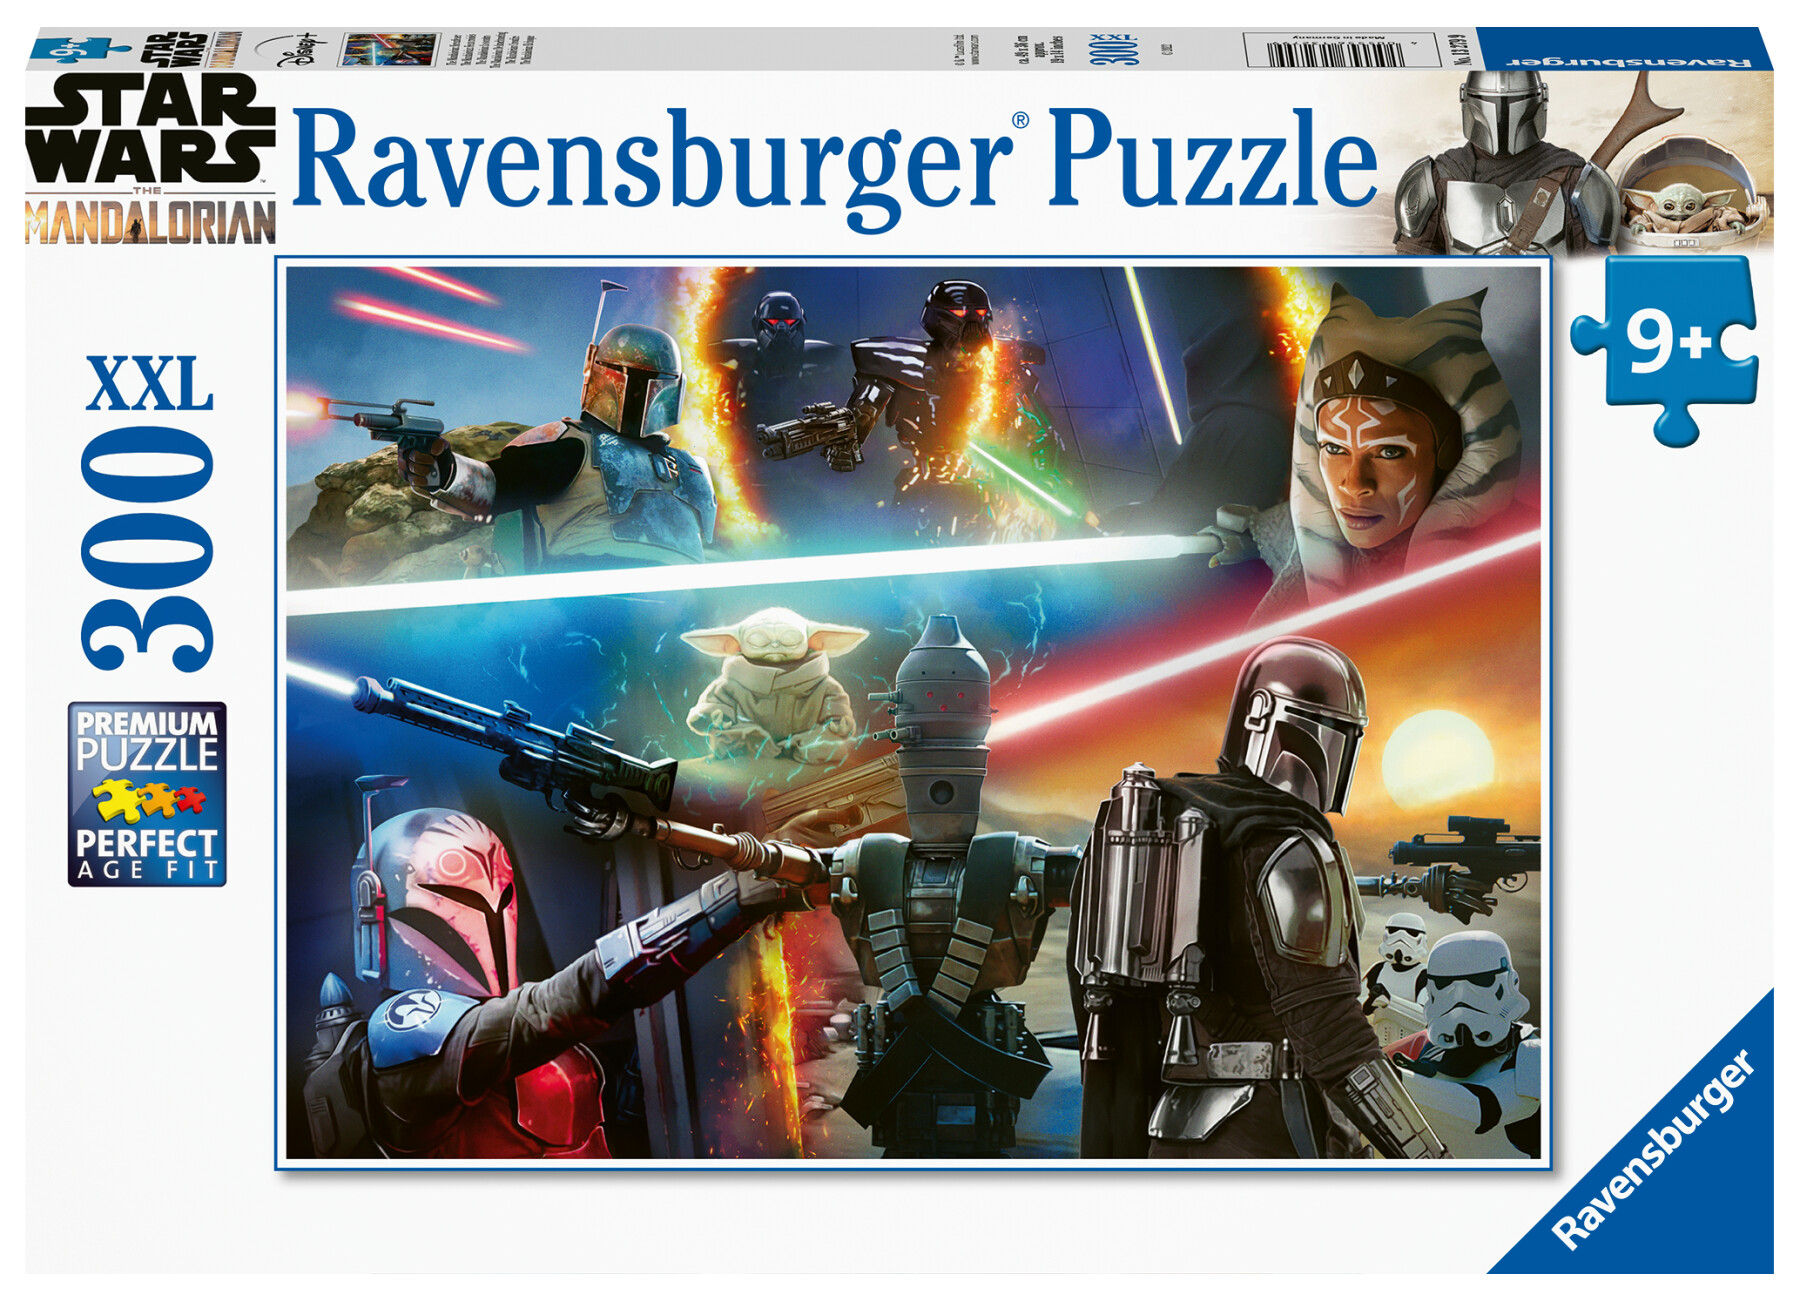 Ravensburger - puzzle the mandalorian, 300 pezzi xxl, età raccomandata 9+ anni - RAVENSBURGER, Star Wars